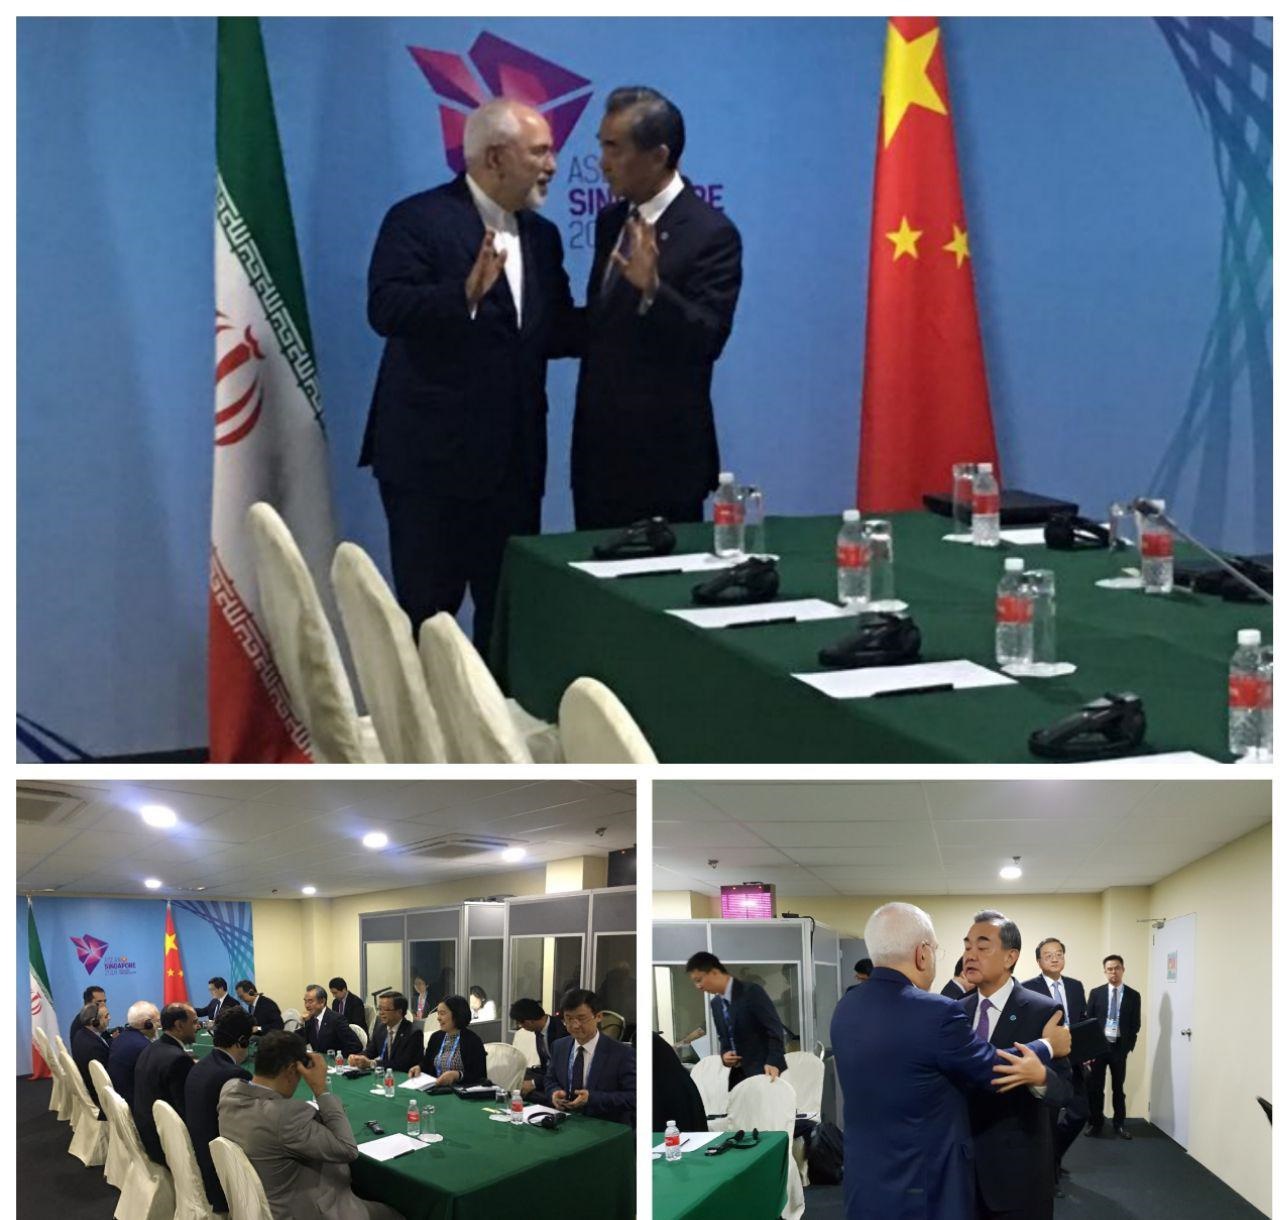  محمد جواد ظریف و وانگ یی وزیران امور خارجه ایران و چین امروز در حاشیه نشست اتحادیه آ سه آن در سنگاپور دیدار و گفتگو کردند.   در این دیدار آقای وانگ یی با تاکید بر "دوستانه، راهبردی و همه جانبه بودن" روابط ایران و چین اظهار داشت: دو کشور به همکاری های نزدیک تر خود در همه زمینه های دو جانبه، منطقه ای و بین المللی، بویژه حفظ برجام به عنوان یک دستاورد دیپلماسی و بهره مندی ایران از مزایای آن ادامه خواهند داد.   دکتر ظریف نیز چین را کشوری مهم‌ و شریک راهبردی ایران خواند و بر حفظ و گسترش روابط دو جانب